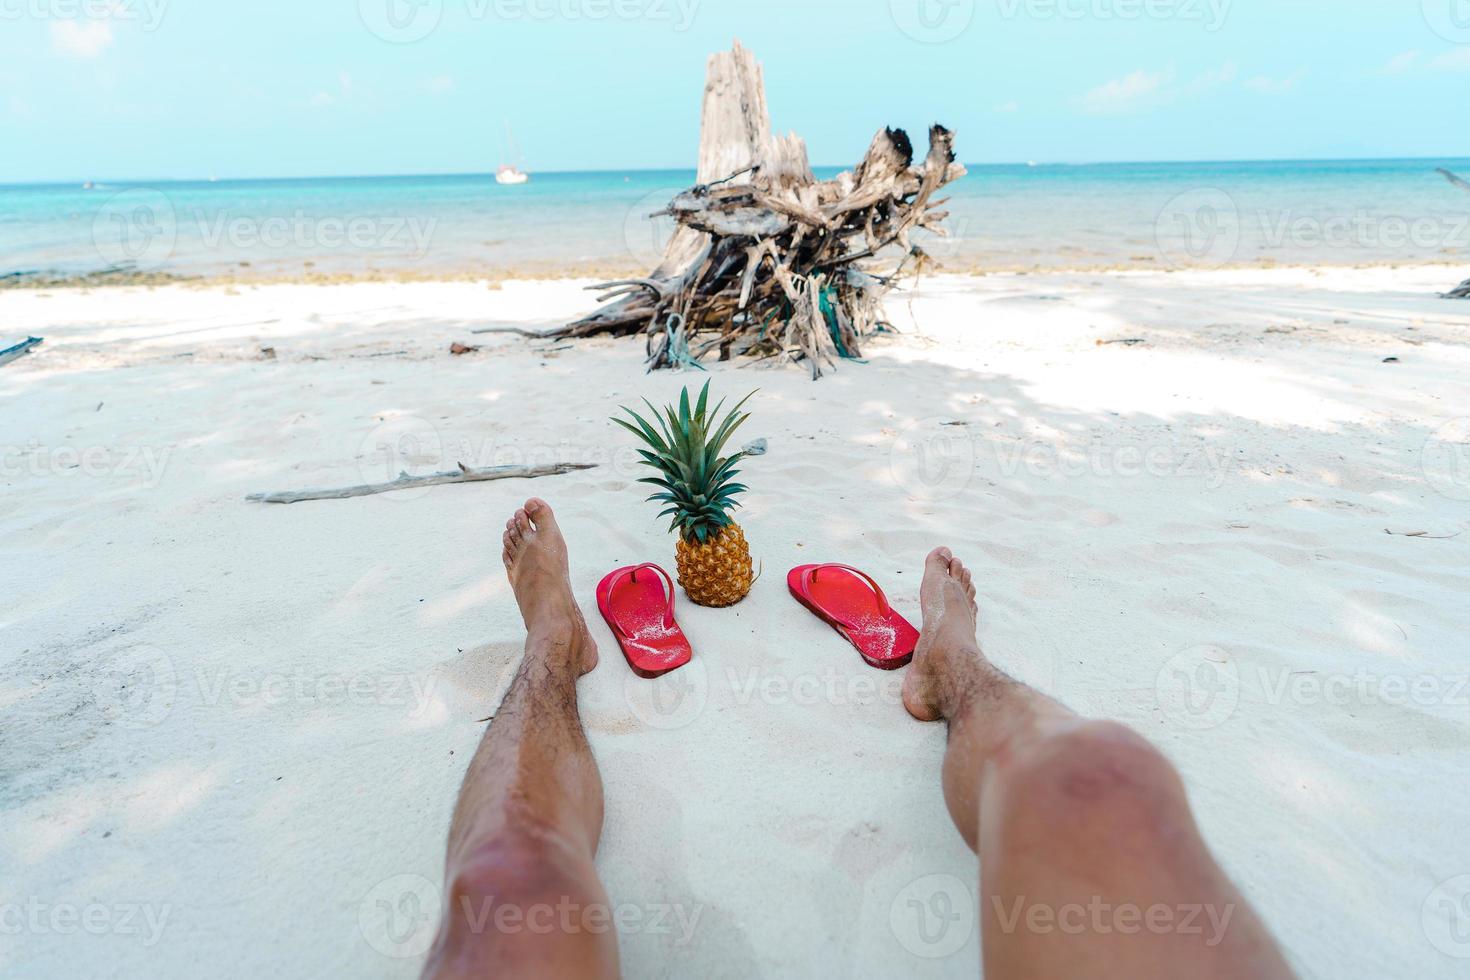 vacanze estive al mare con ananas e infradito in spiaggia foto